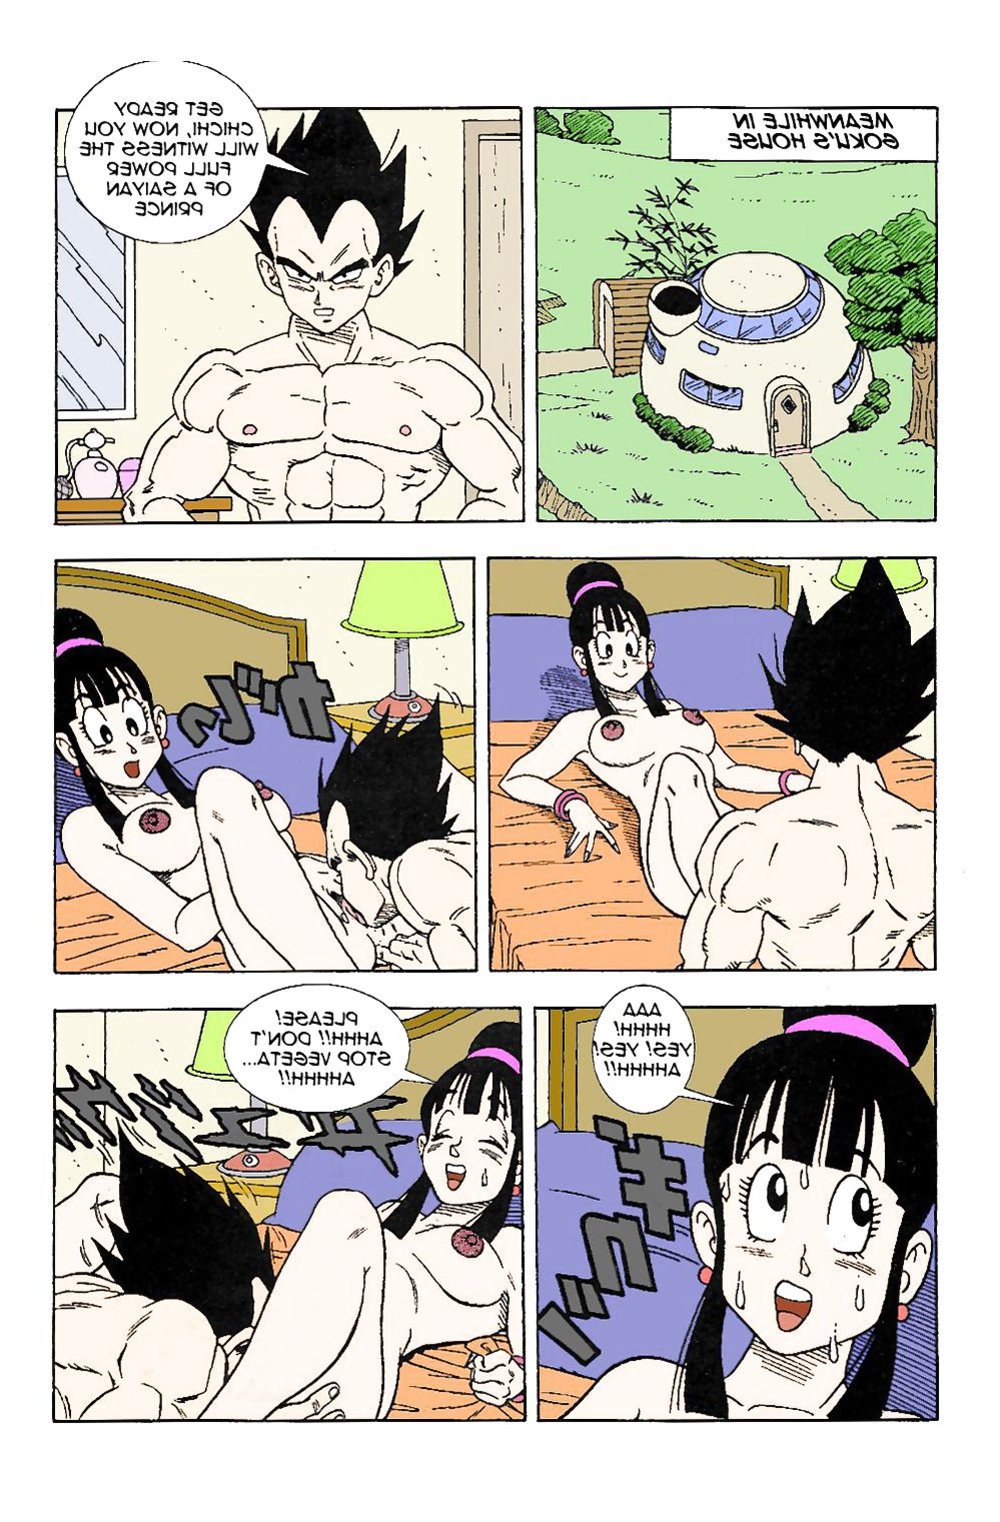 Dbz Vegeta Porks Gokus Wifey Chichi Zb Porn 3137